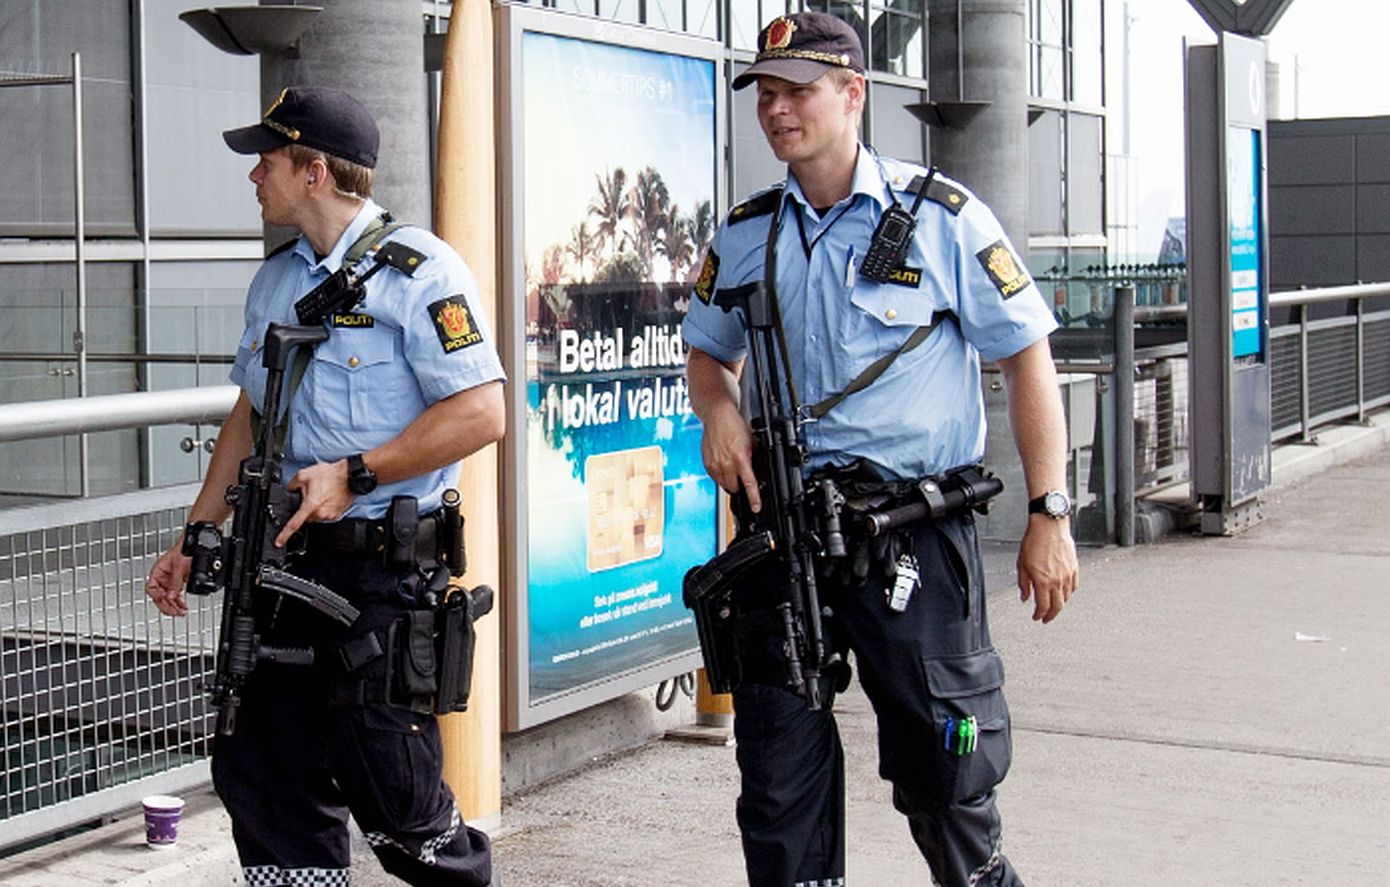 Συναγερμός στη Νορβηγία: Οι αστυνομικοί θα φέρουν όπλα εξαιτίας απειλών που δέχεται η μουσουλμανική κοινότητα